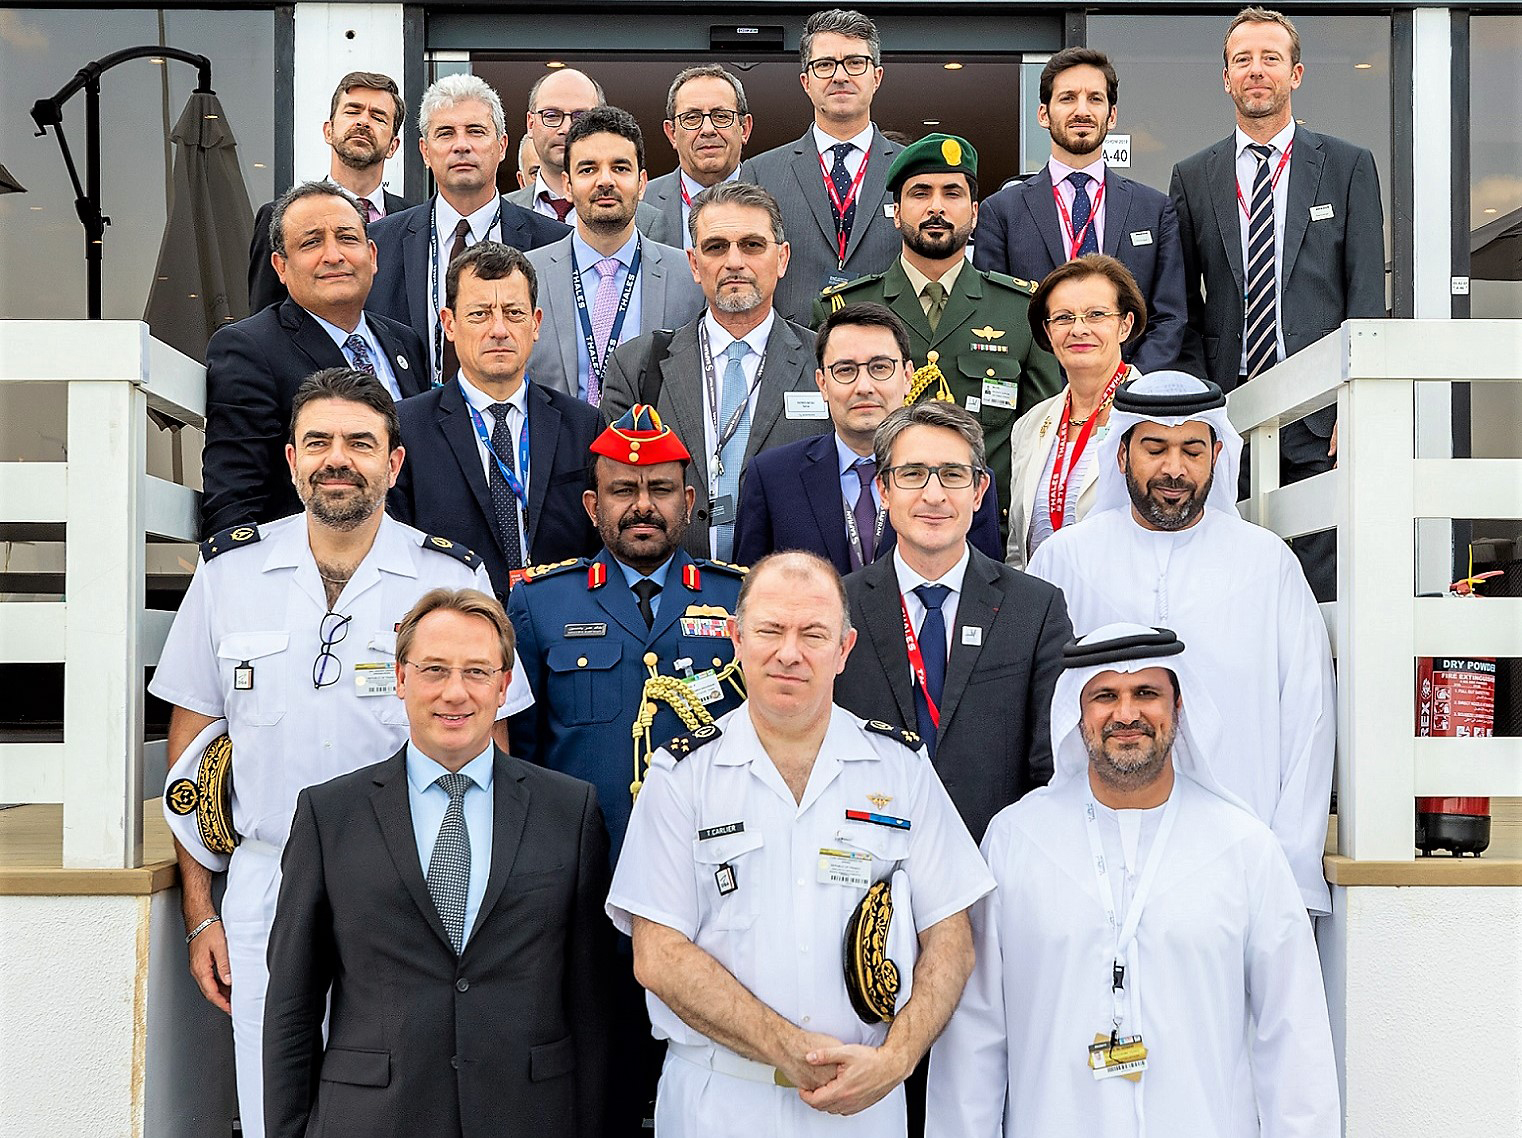 UAE, France bolster defence cooperation